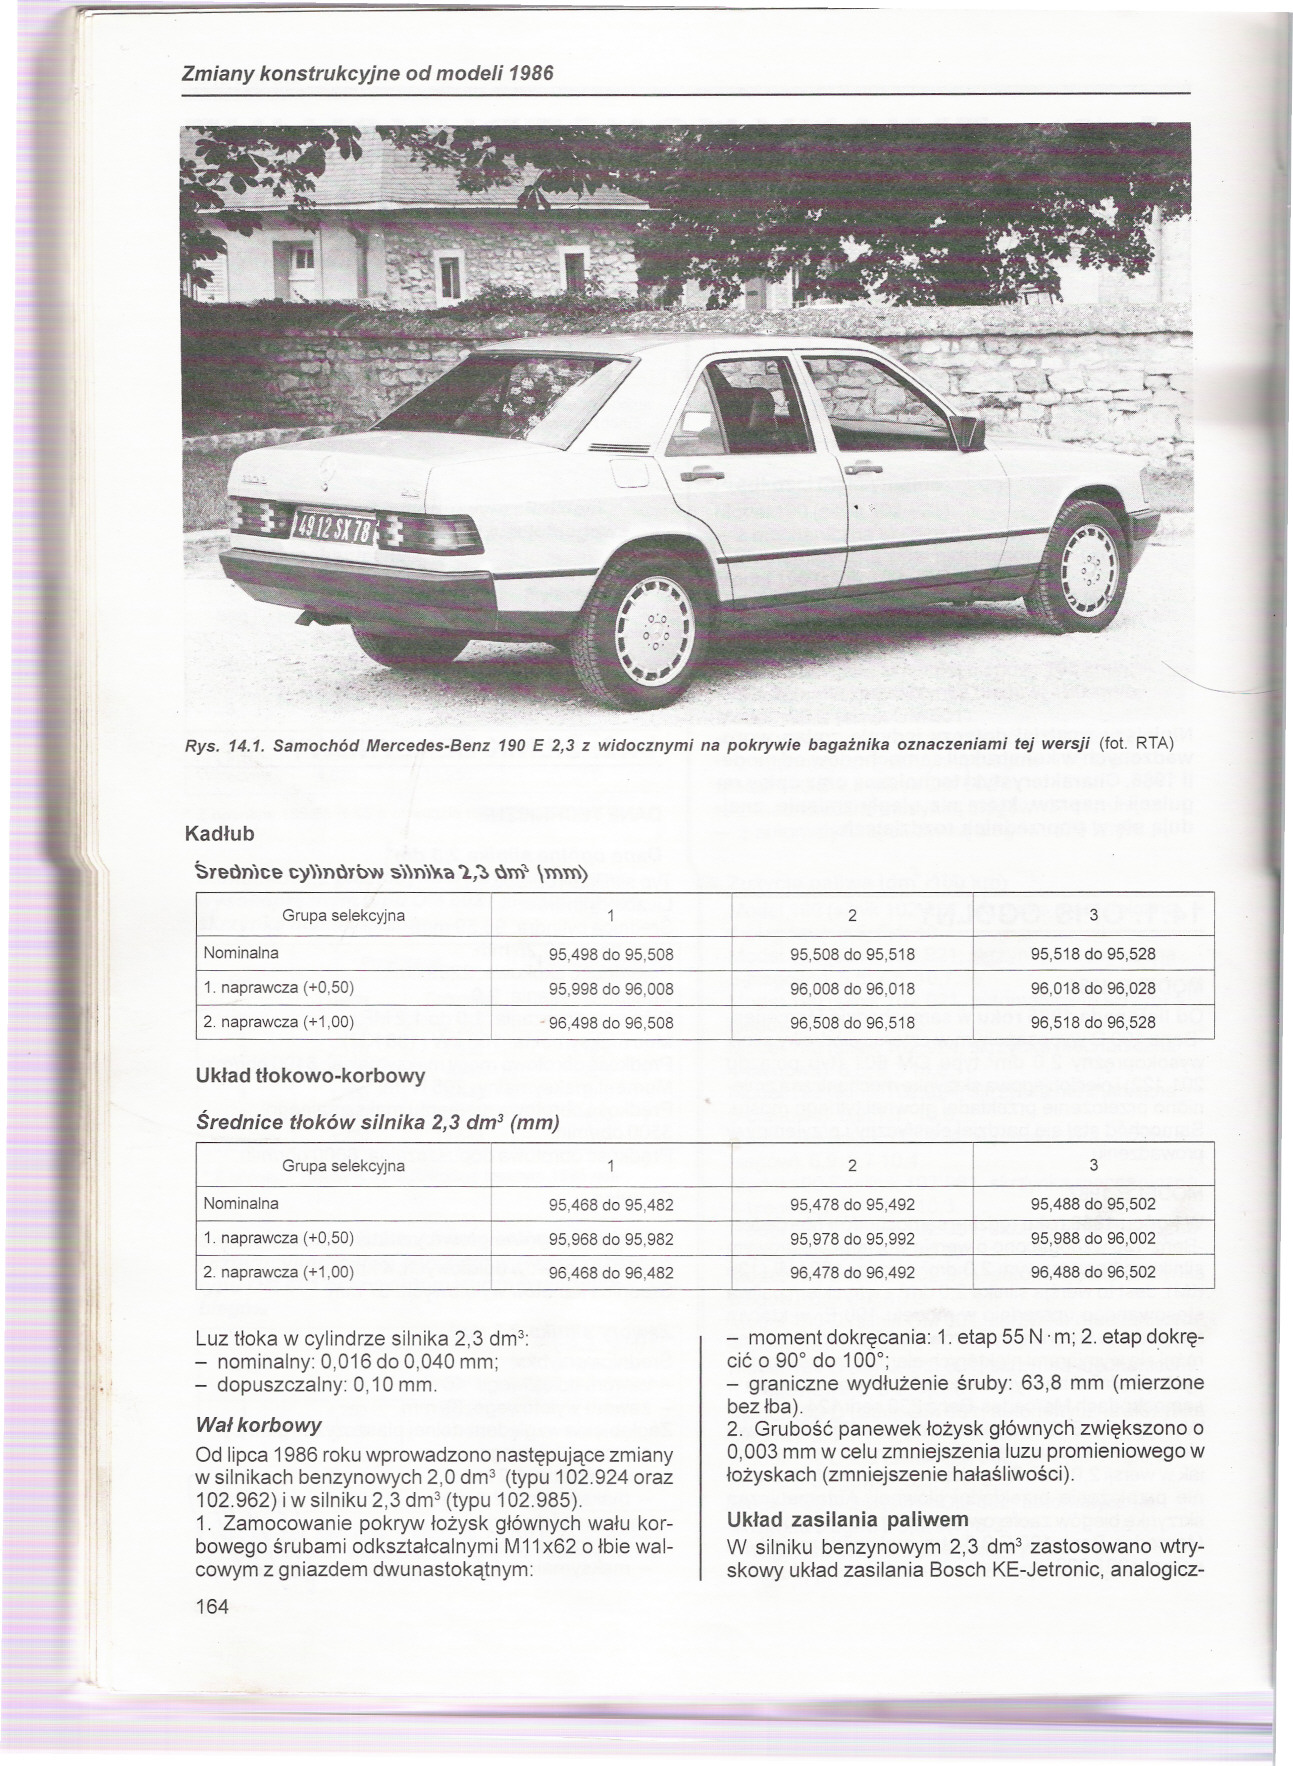 Zmiany konstrukcyjne od modeli 1986 Rys 141 Samochód Mercedes-Benz 190 E 2,3 z widocznymi na pokrywie bagaznika oznaczeniami tej wersji (fot RTA) Kadlub ~Teon)ce cy)notowsnr",1,1>um>mm) Grupa